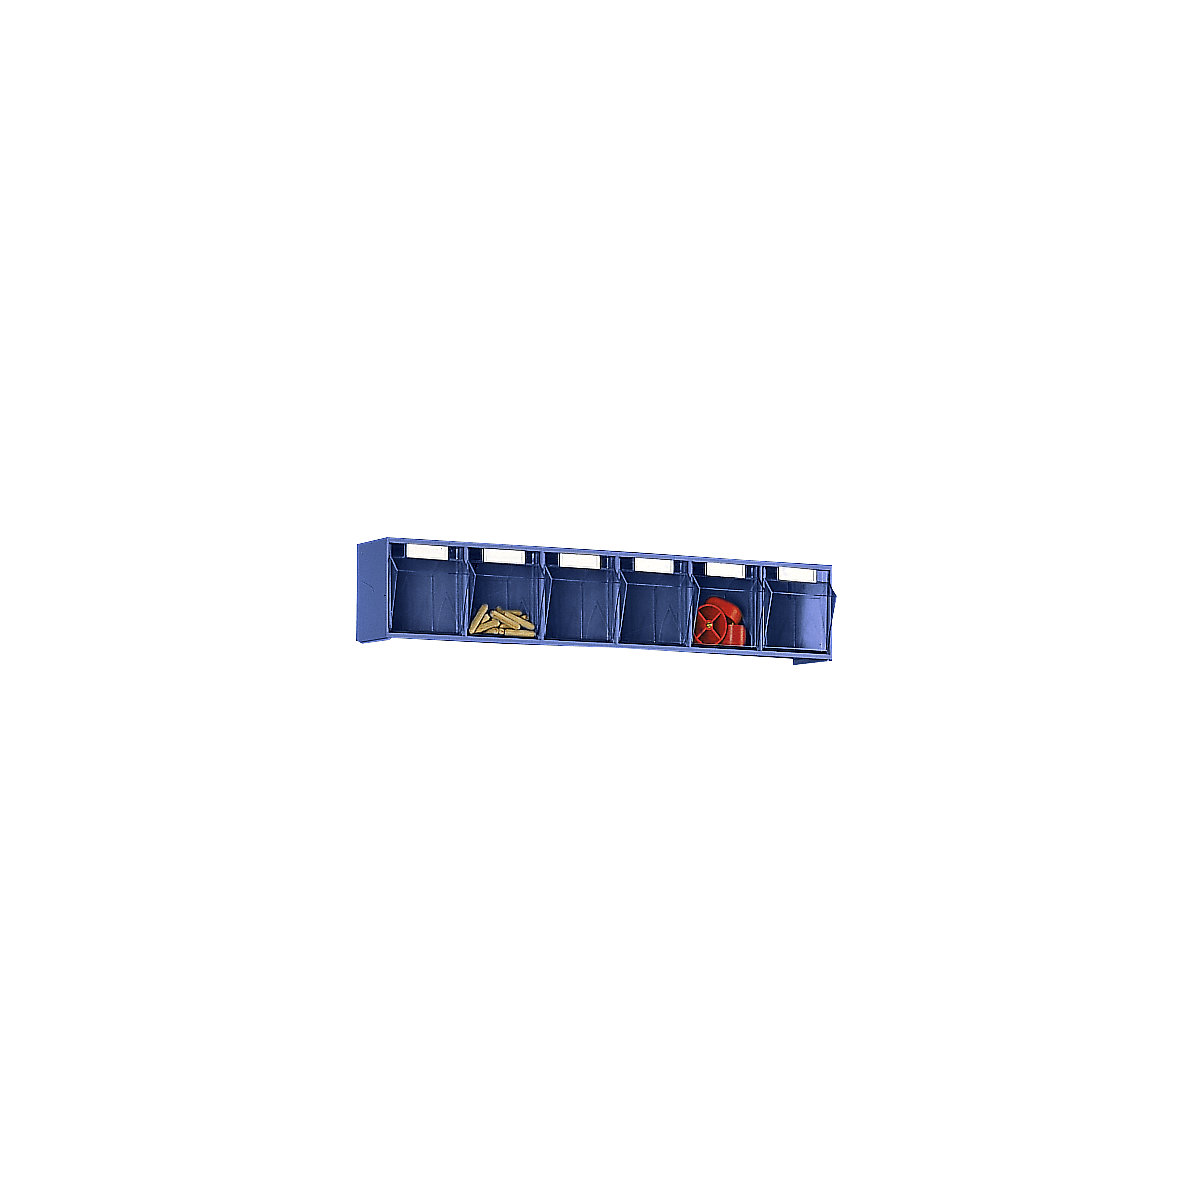 Caja abatible modular, H x A x P del cuerpo 113 x 600 x 91 mm, 6 cajas azules-6